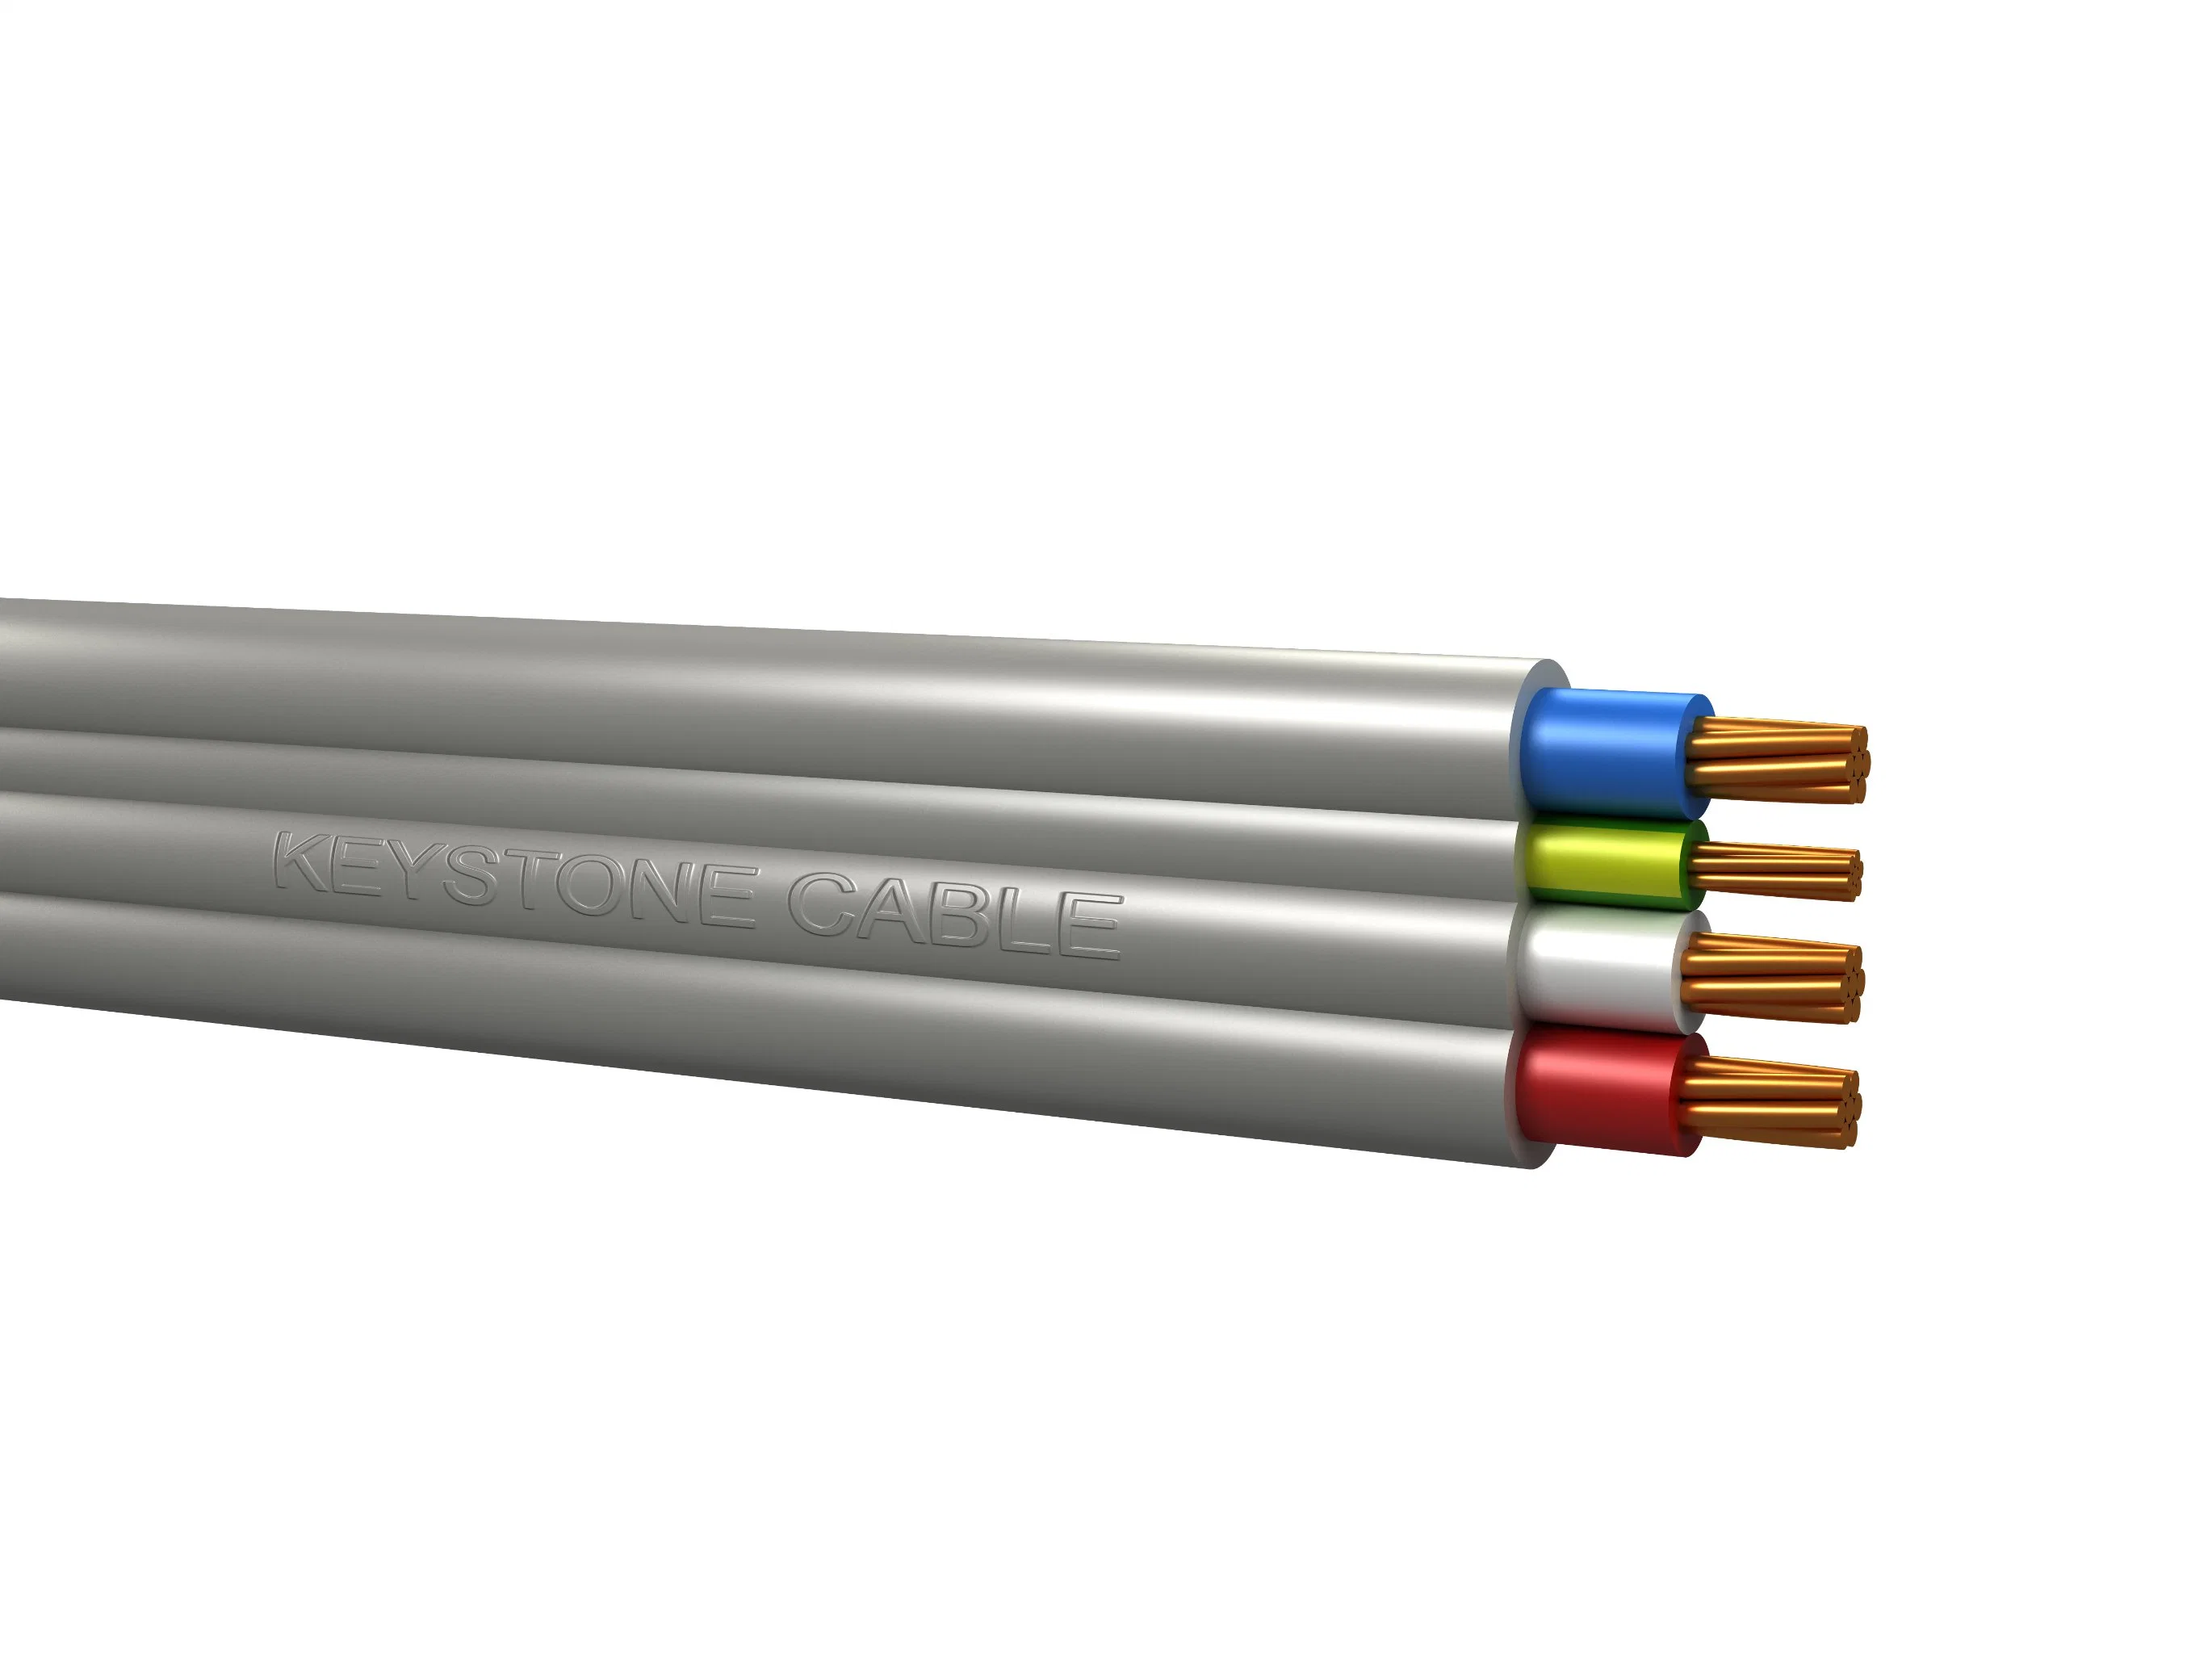 Câble plat, câble PVC, fil de construction, câble twin et earth, fil de connexion, câble en cuivre flexible, fil électrique et prix du câble 2192y, câble électrique TPS.